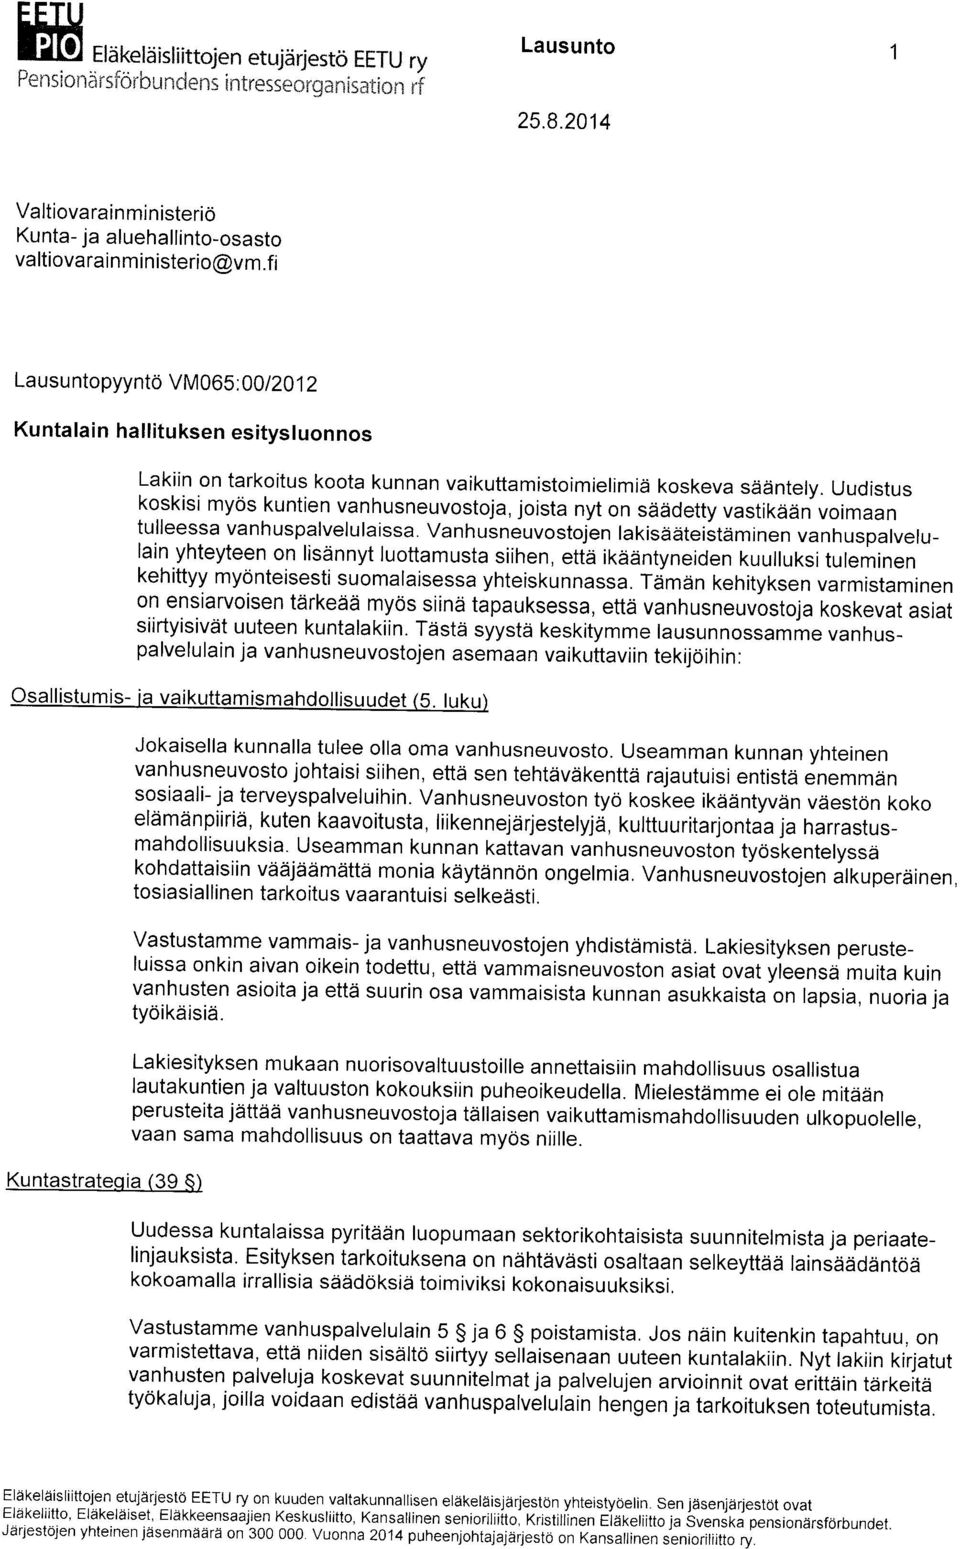 00 1201 2 Kuntalain hallituksen esitysluonnos Lakiin on tarkoitus koota kunnan vaikuttamistoimielimid koskeva sddntely.